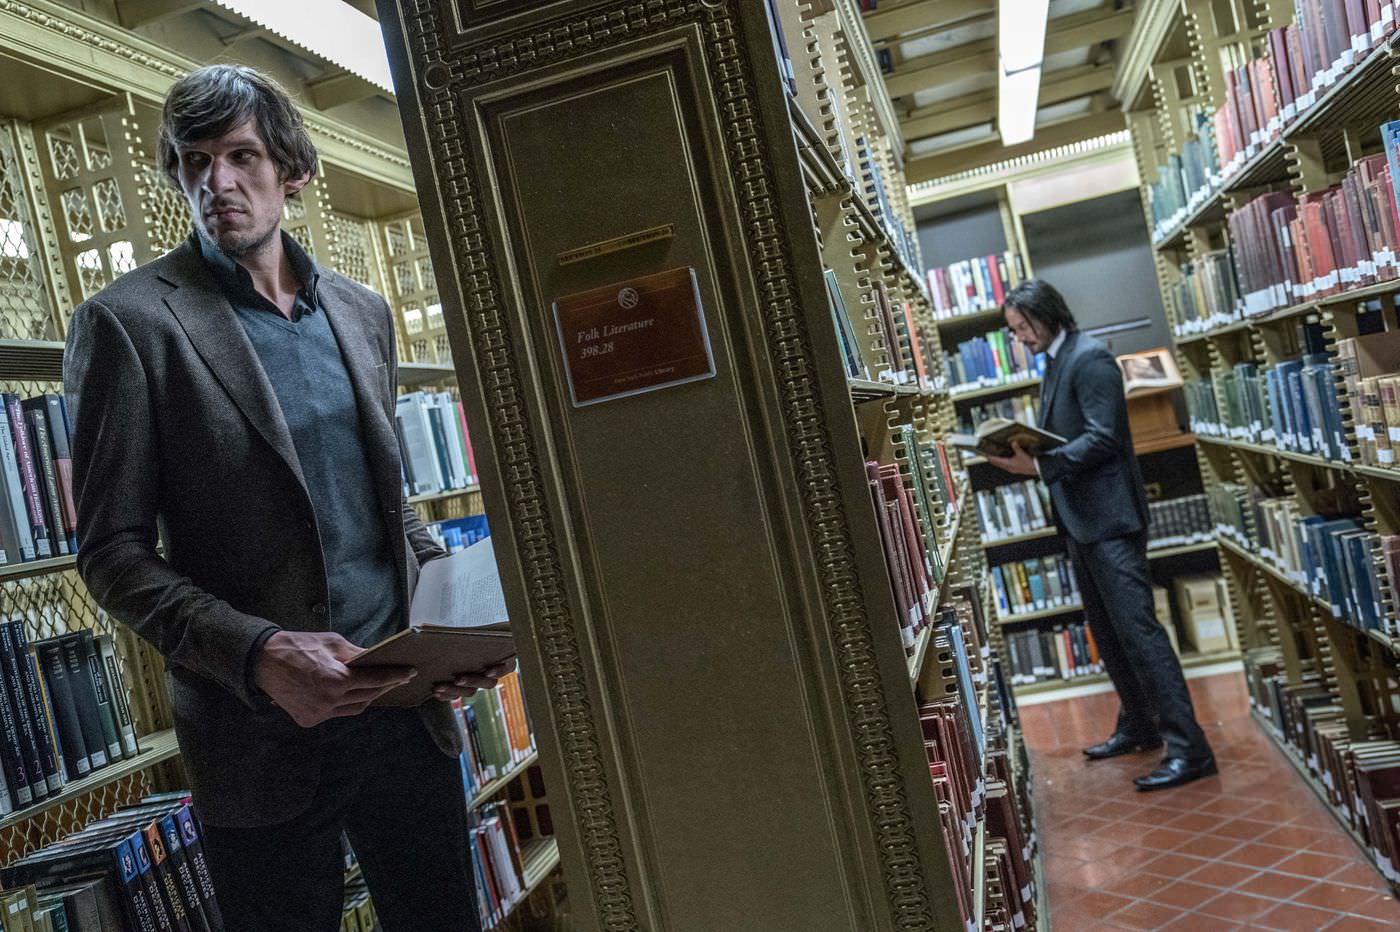 جان ویک و بوبان مریانوویچ در یک کتابخانه در فیلم john wick